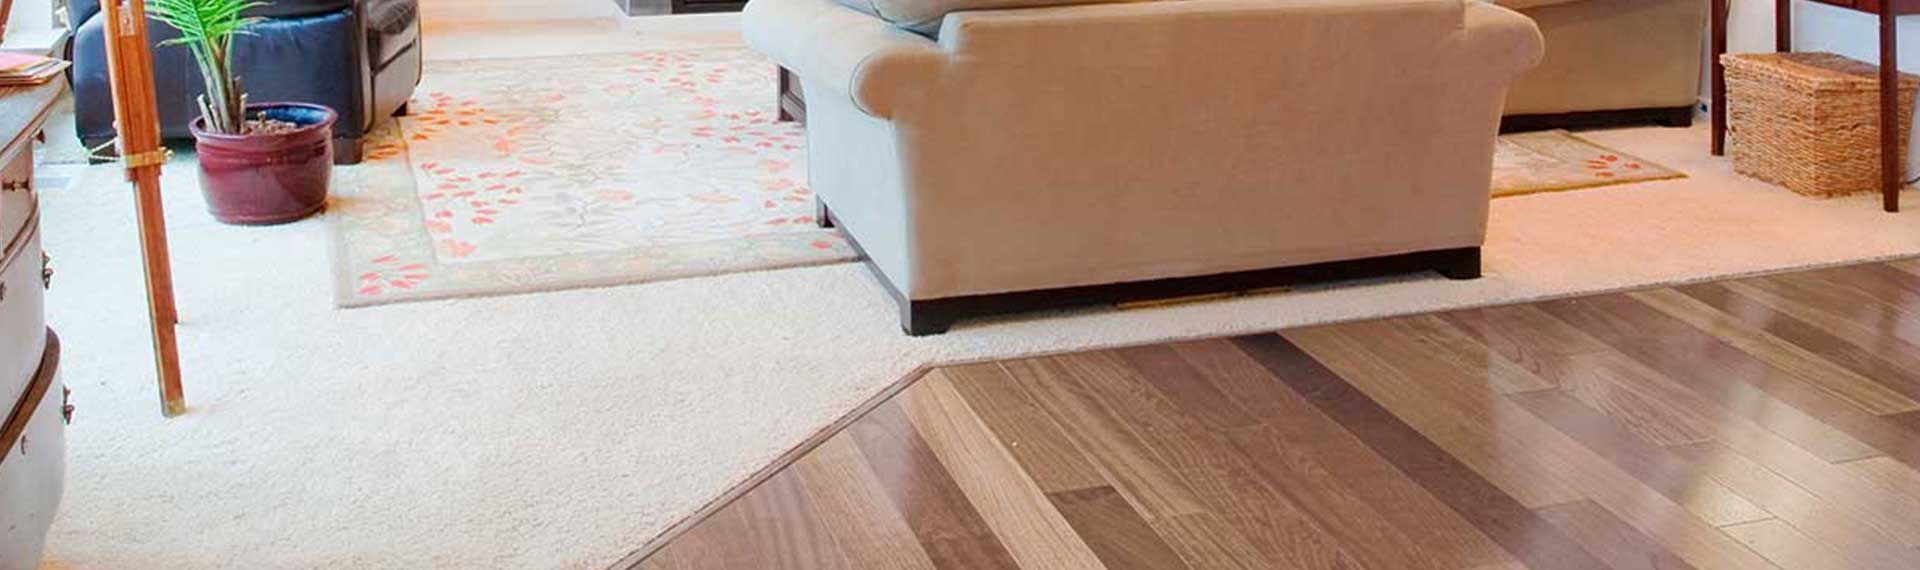 ¿has pensado en remodelar tu casa con alfombra y piso vinílico? La combinación de estos dos tipos de suelos en un solo espacio crea increíbles diseños y ofrece ventajas de comodidad y durabilidad